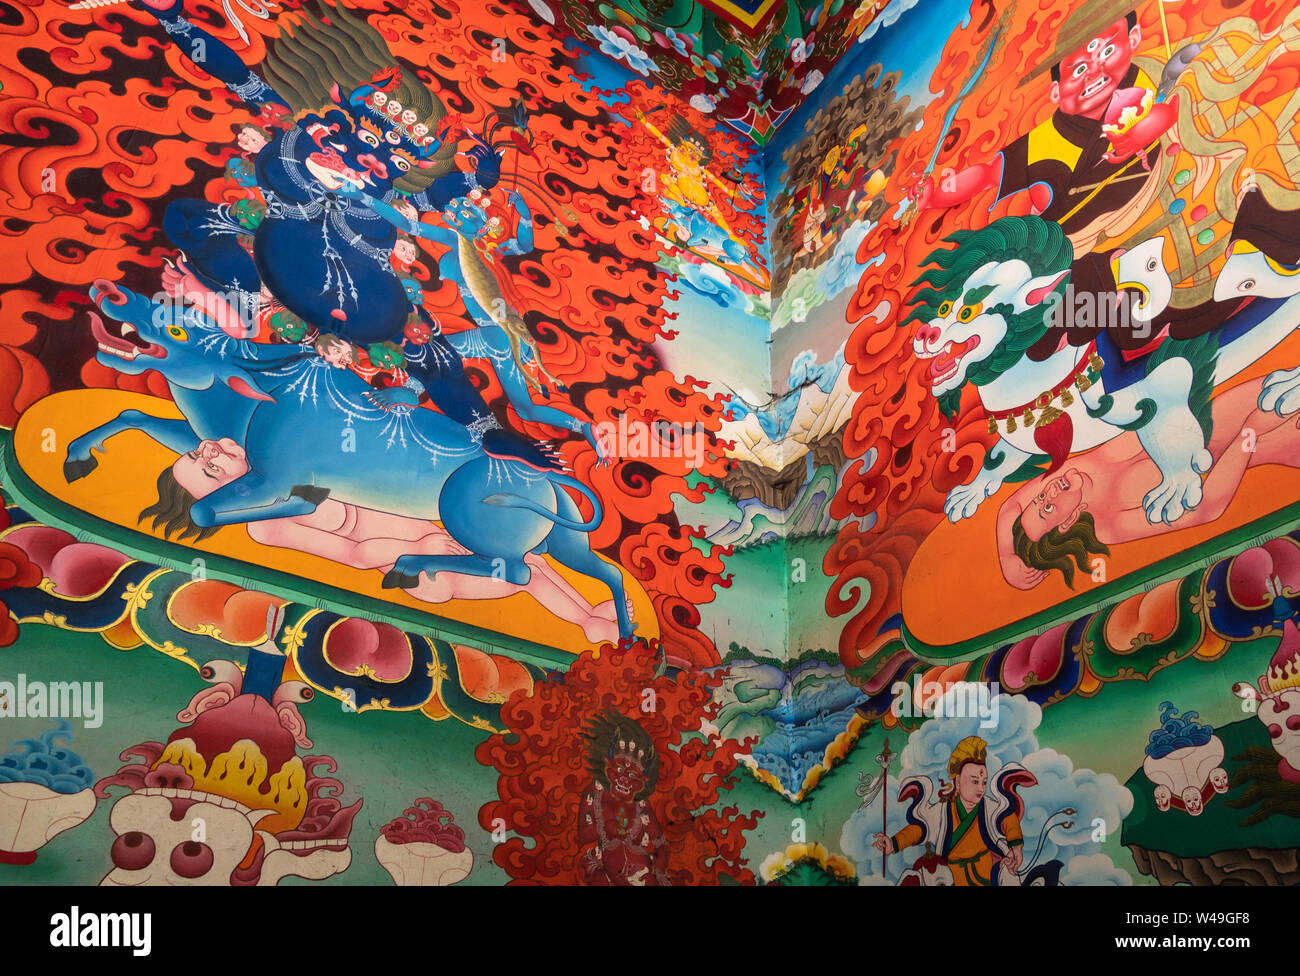 Shangri La, China - 1. März 2019: Wandmalereien des Tibetischen Buddhismus Mythologie innerhalb der berühmte Songzanlin Kloster in Shangri La. Dies ist der Beginn der t Stockfoto